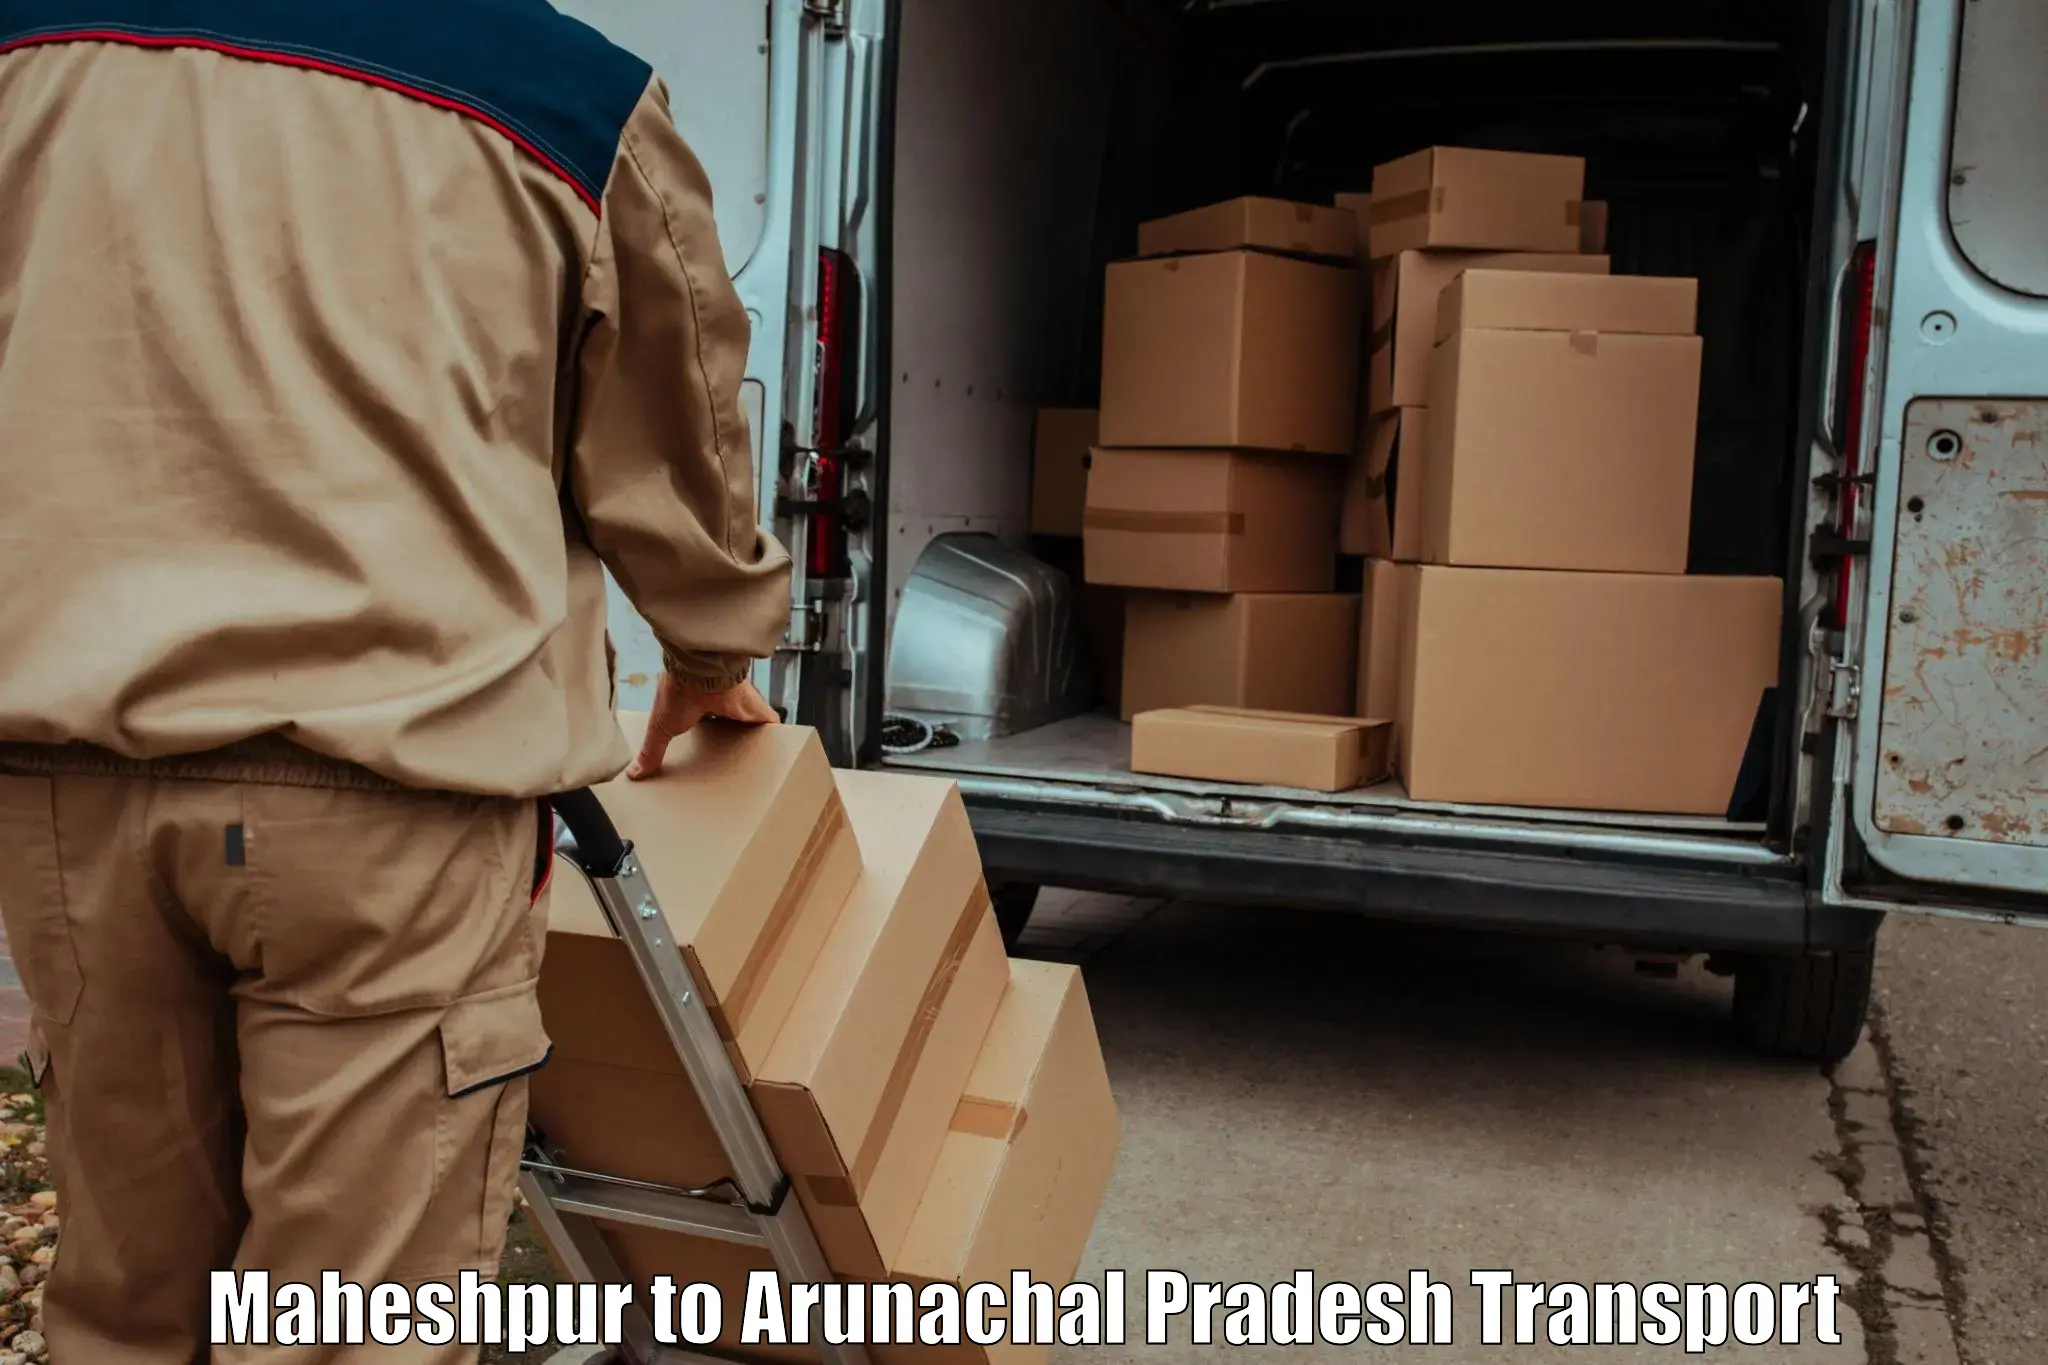 Intercity transport in Maheshpur to Arunachal Pradesh